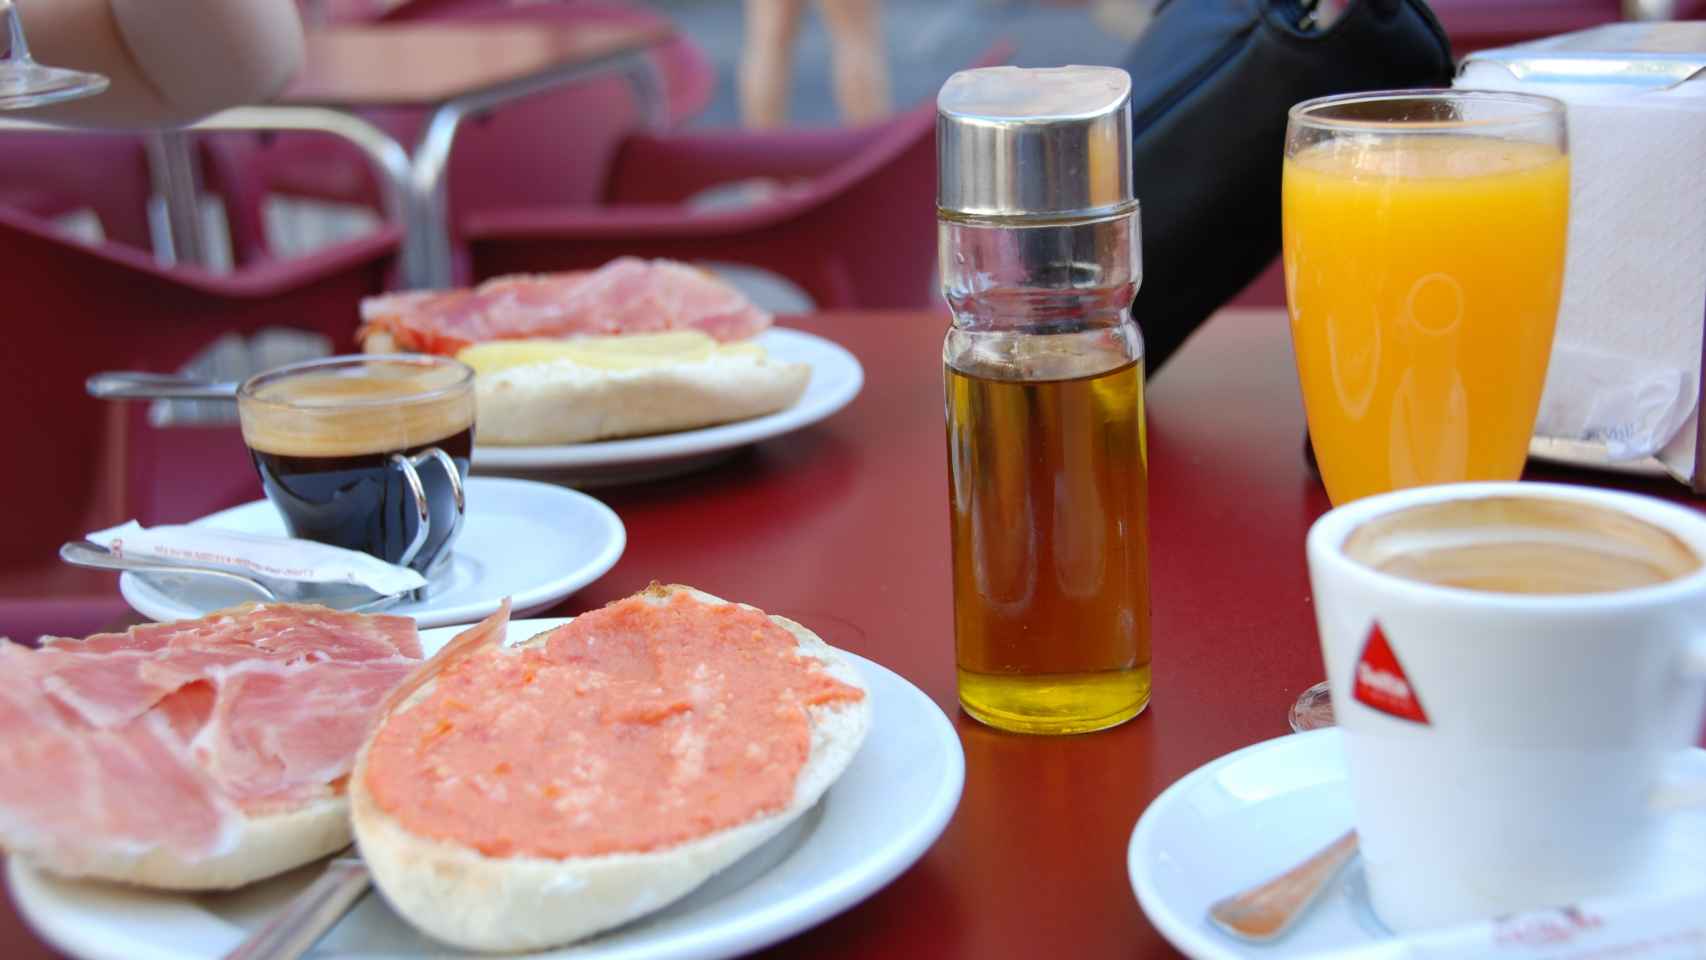 Un desayuno clásico de los bares de España.